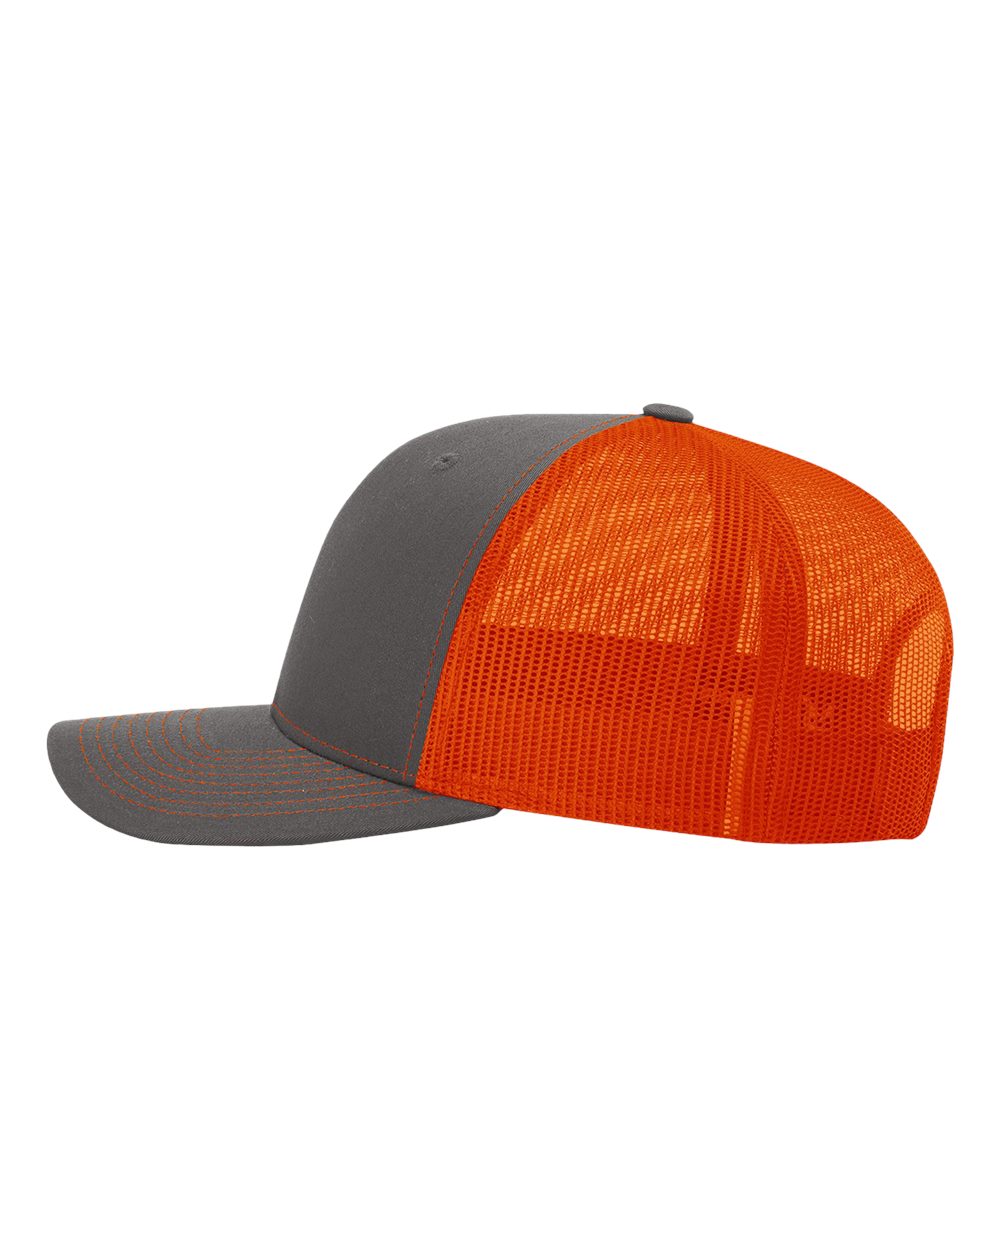 Richardson Adjustable Customized Snapback Trucker Caps, Charcoal Orange